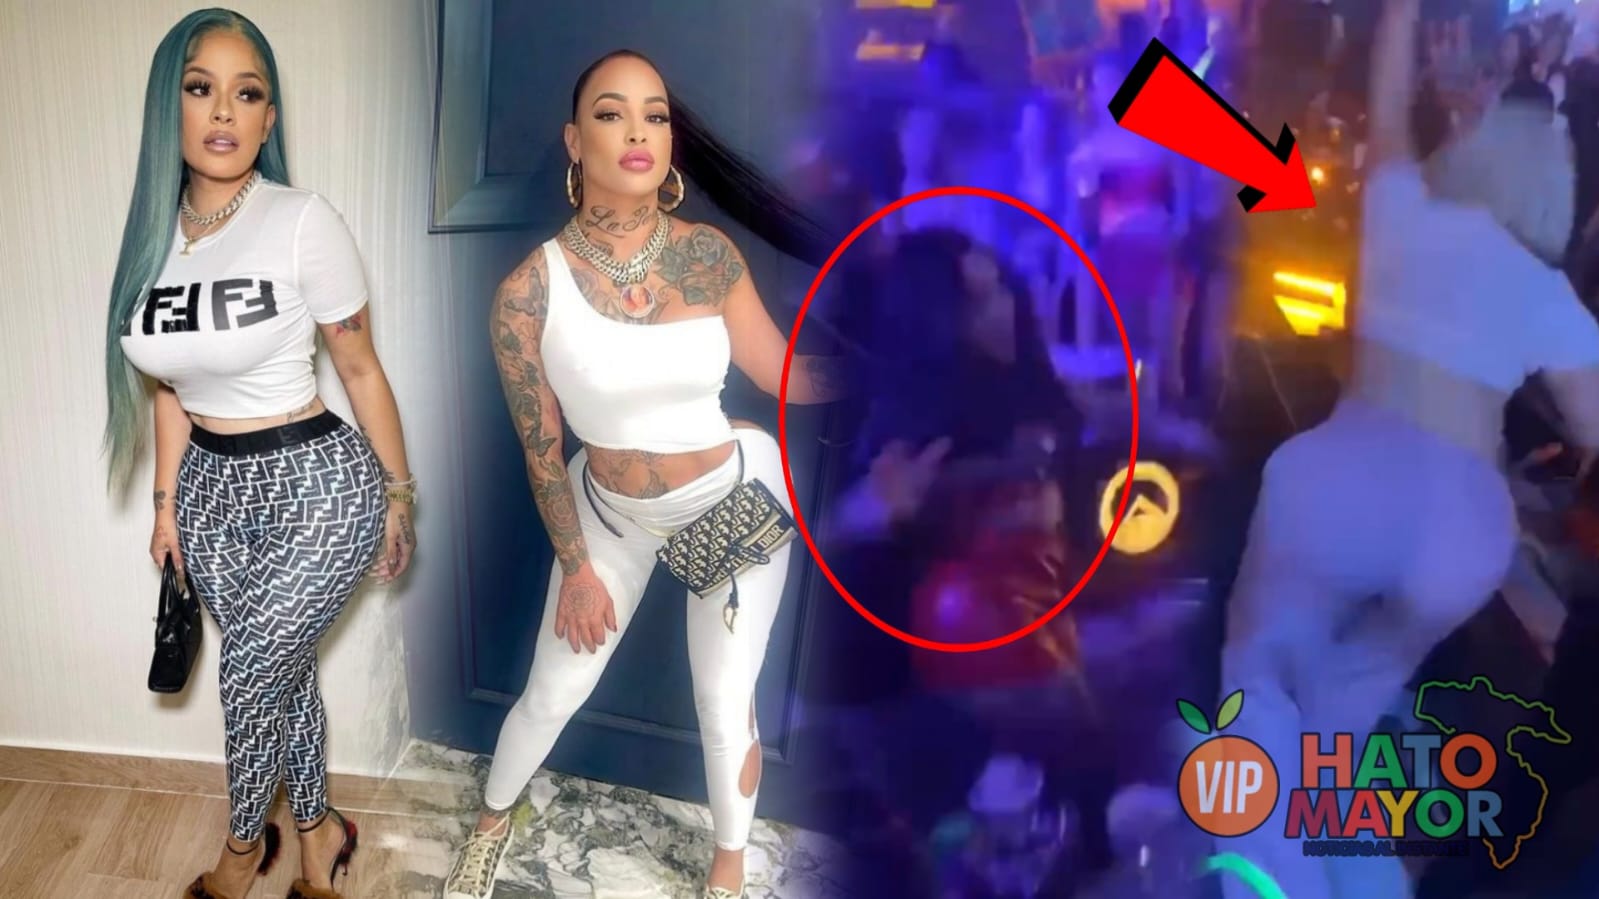 (VIDEO) A botellazos limpio se enfrentan La Insuperable y Mami Jordan en una discoteca